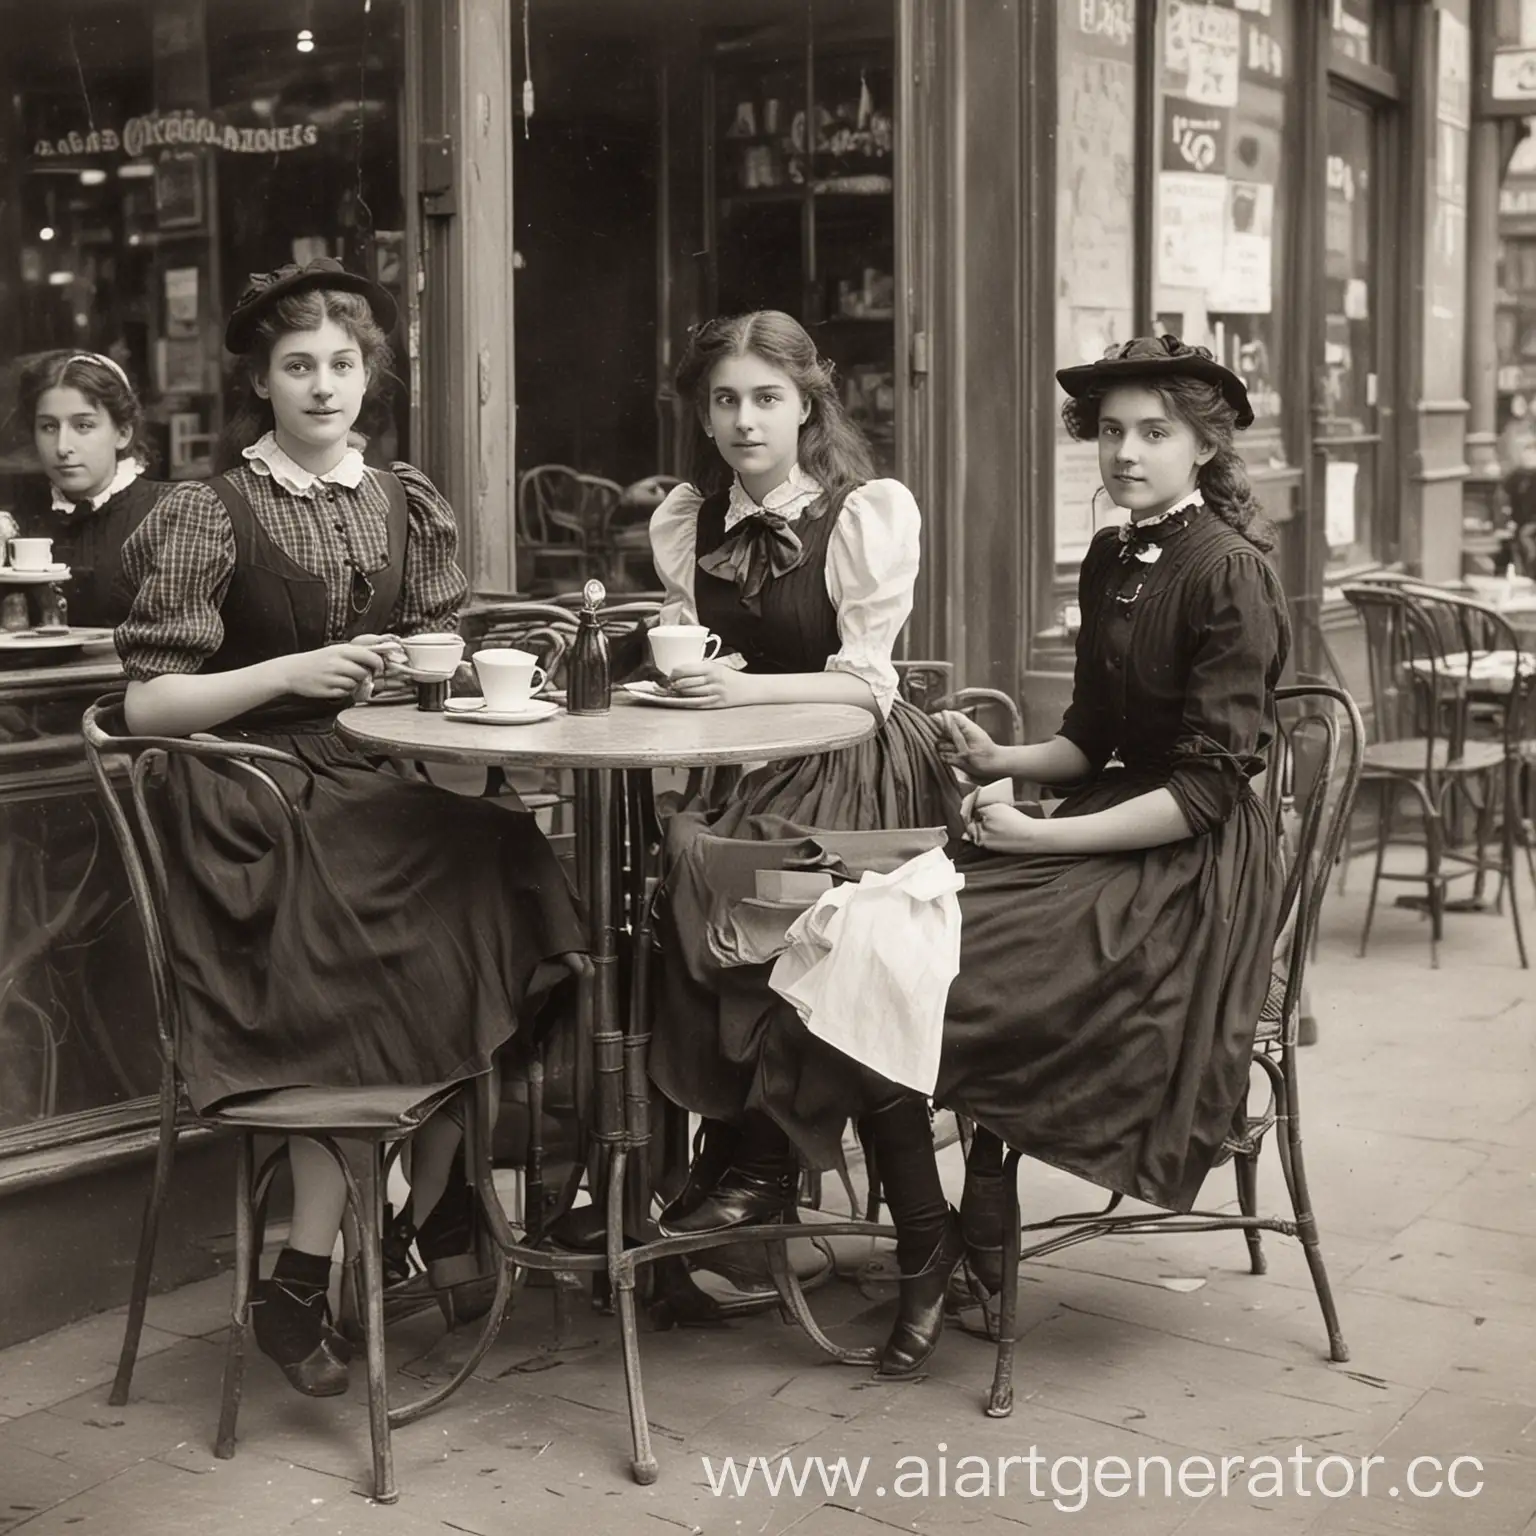 фотография кафе в 1900 году с двумя барышнями черно-белая